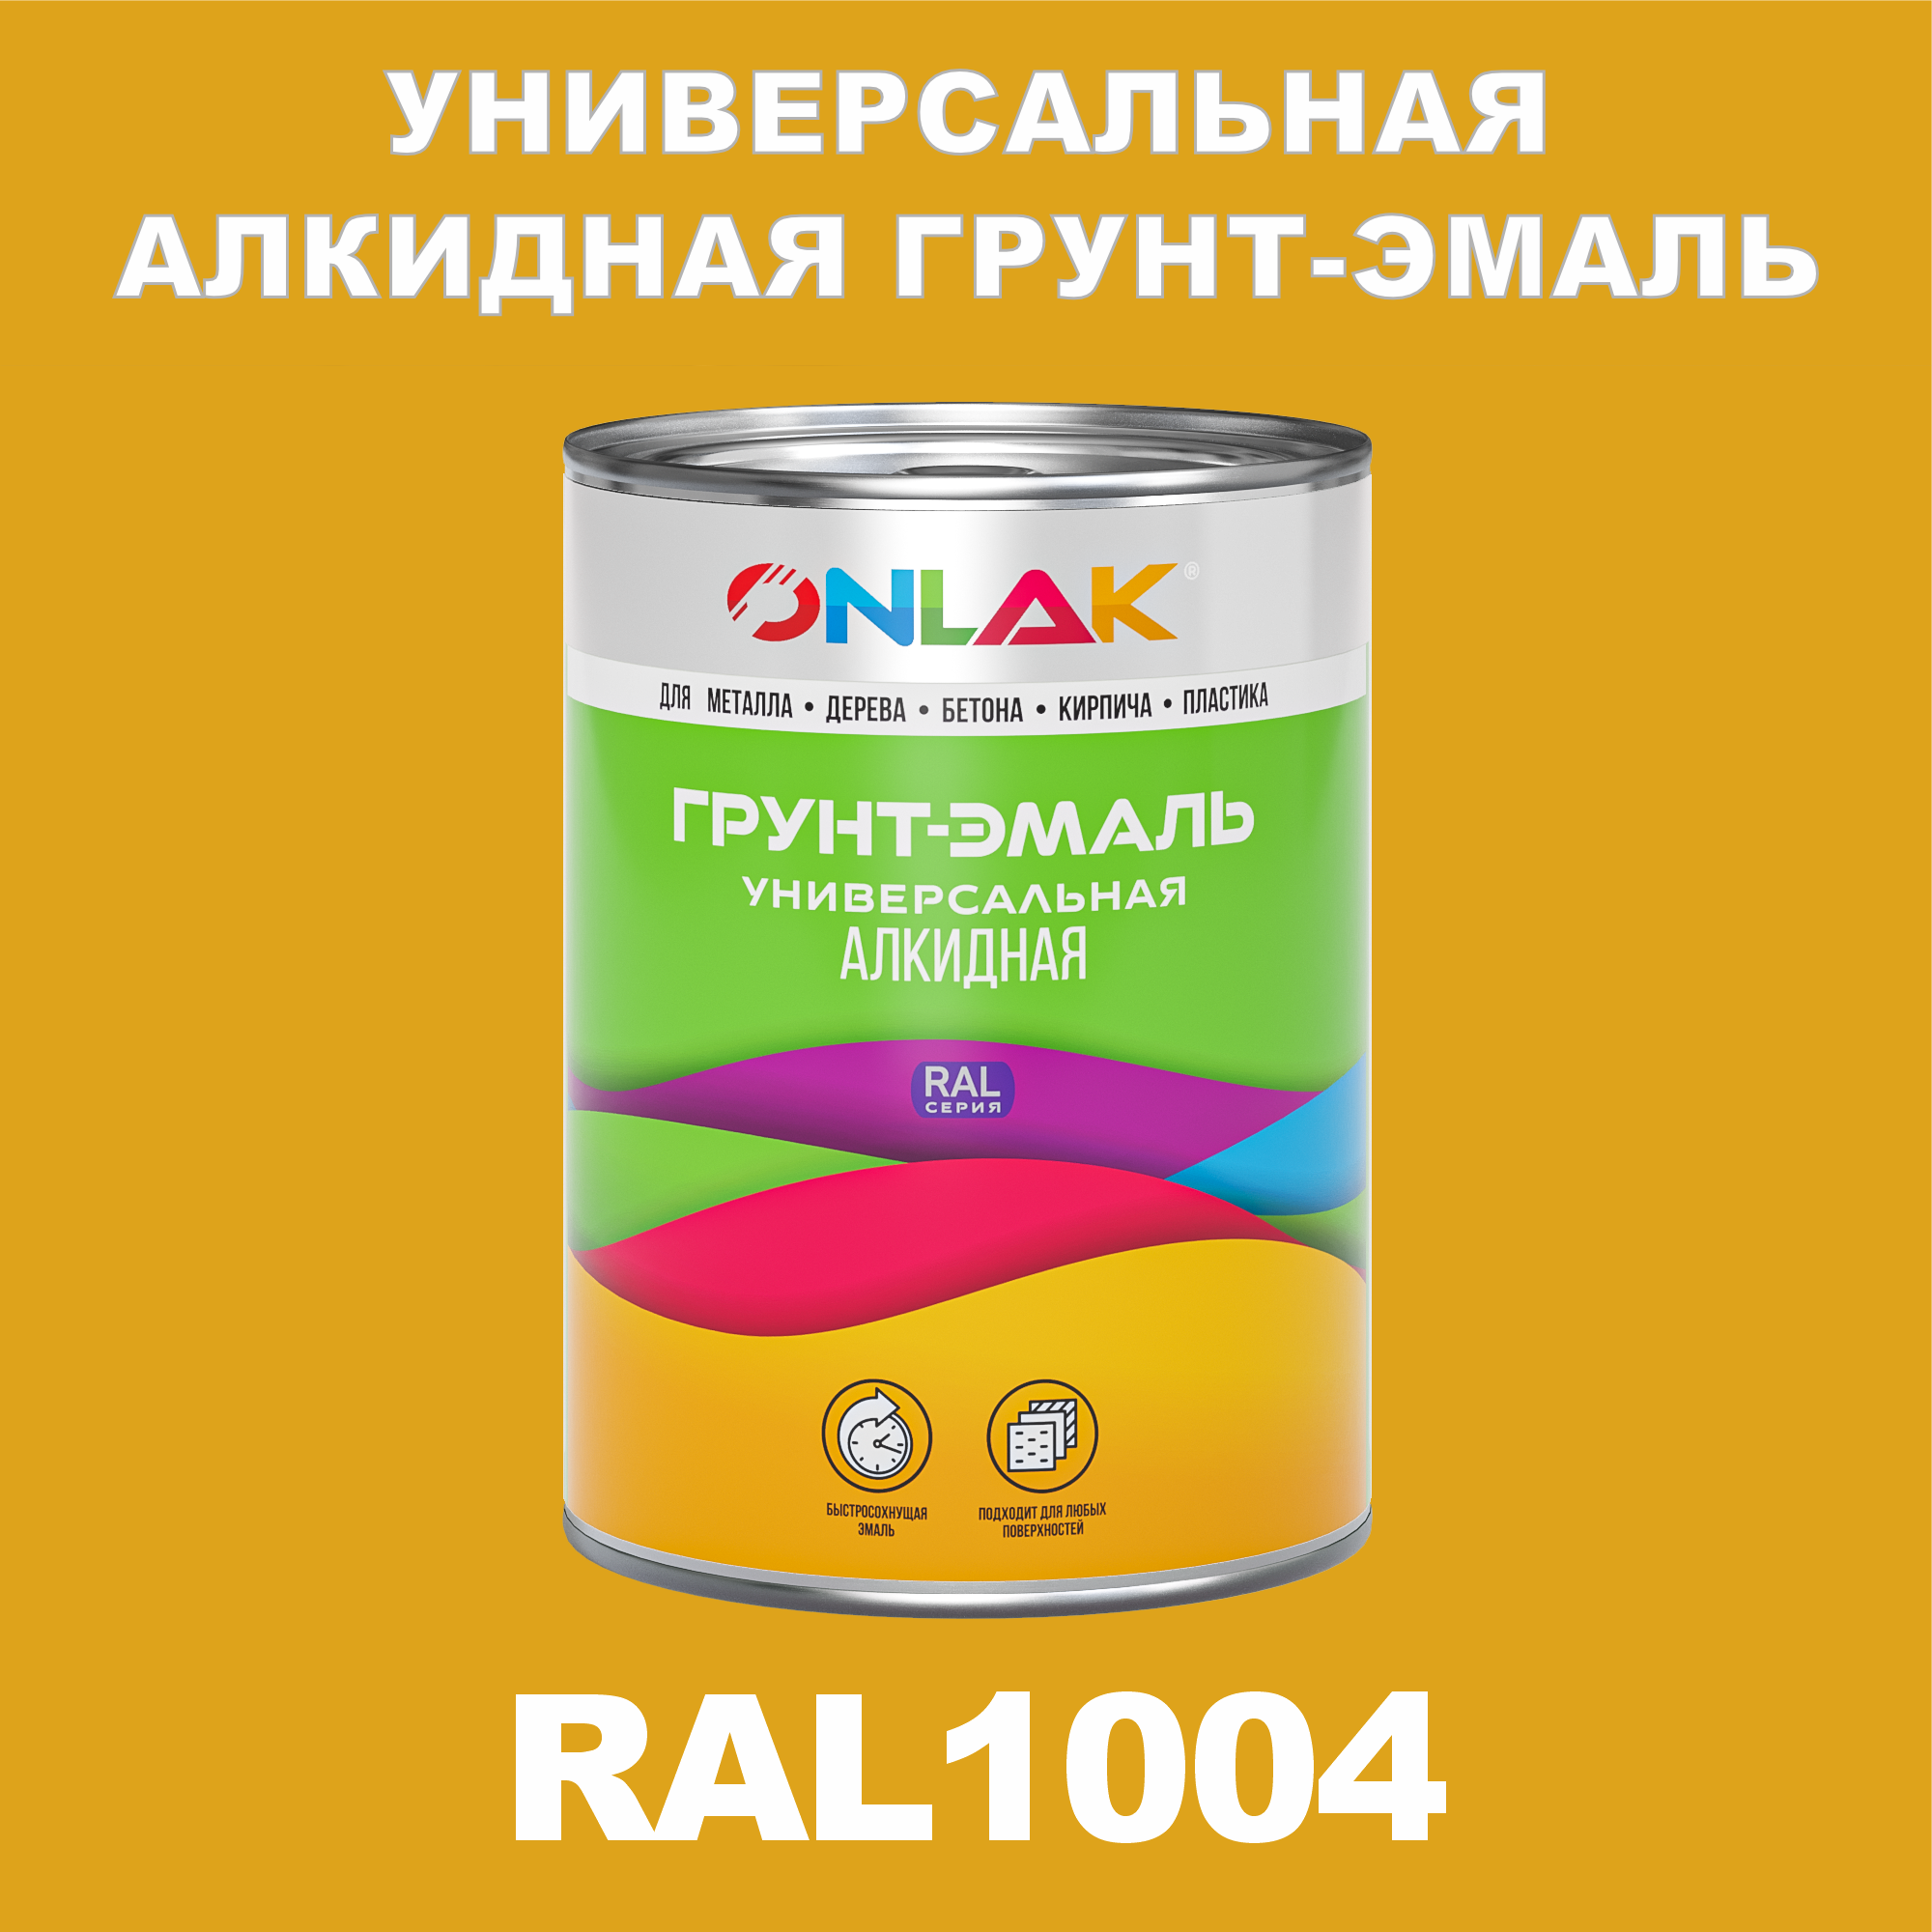 Грунт-эмаль ONLAK 1К RAL1004 антикоррозионная алкидная по металлу по ржавчине 1 кг